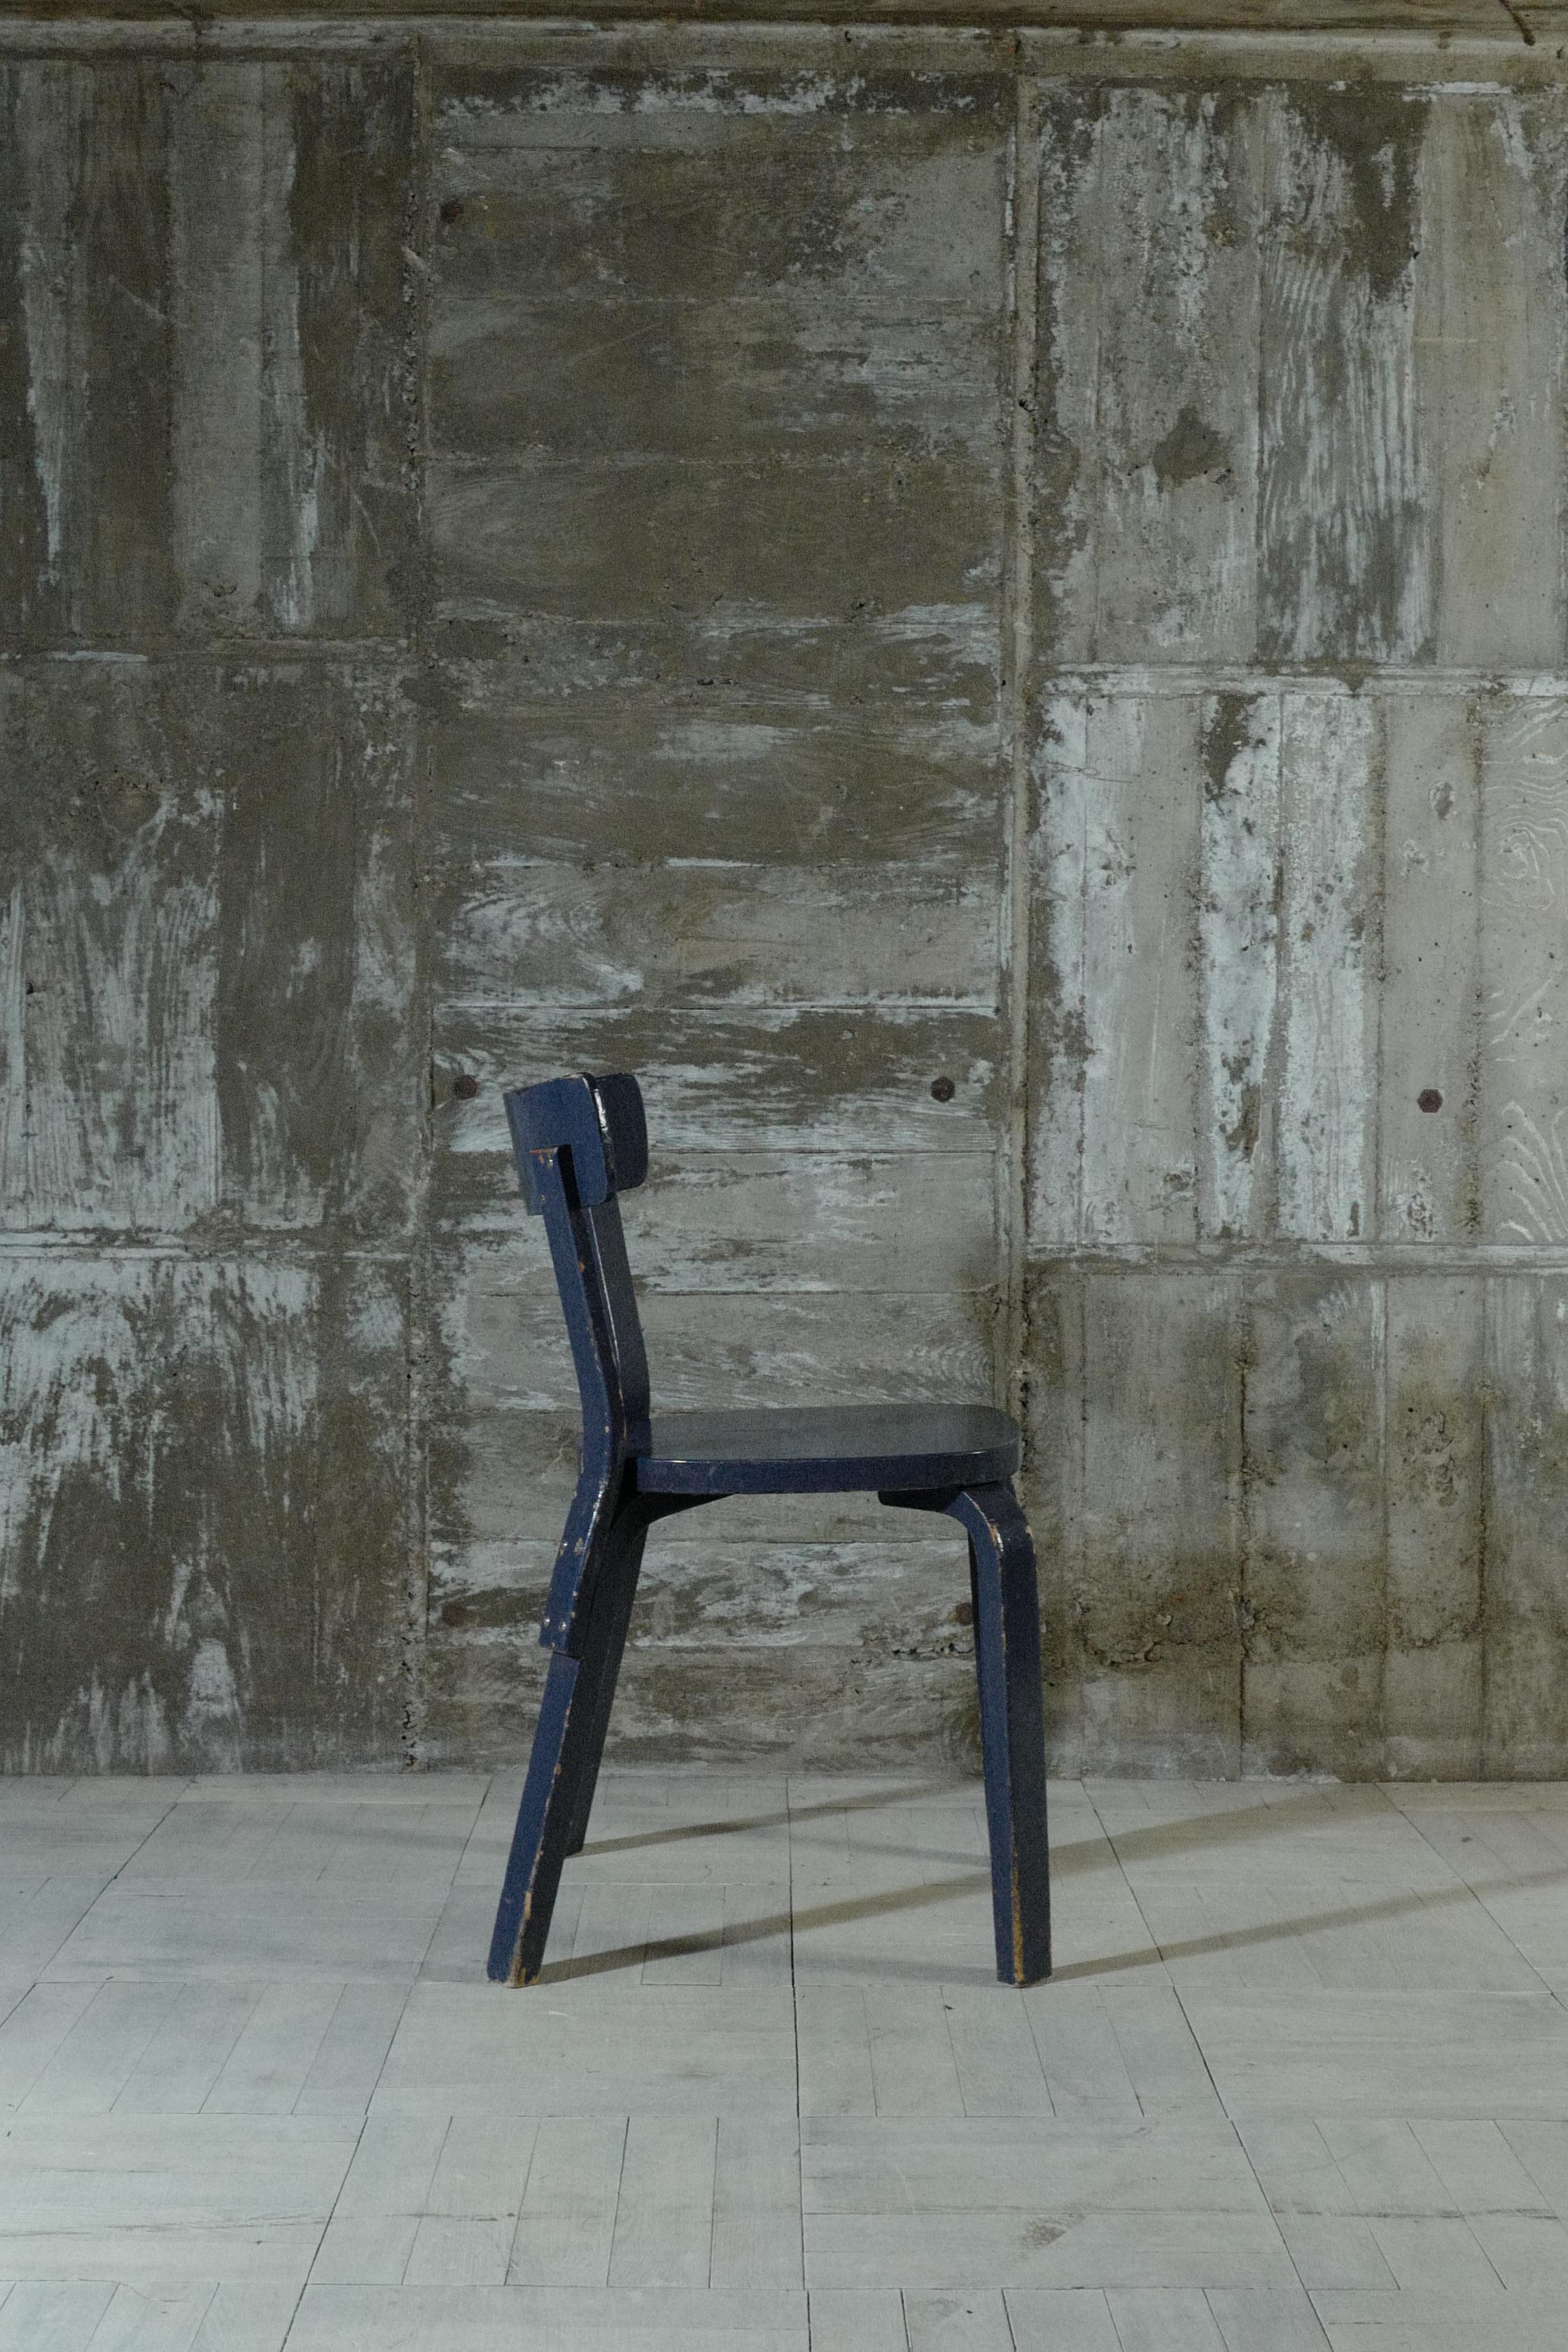 Entworfen von Alvar Aalto.
Dies ist der Lehrstuhl 69.
Überall wird tiefblaue Farbe aufgetragen.
Dieser Stuhl wurde in den 1930er Jahren hergestellt.
